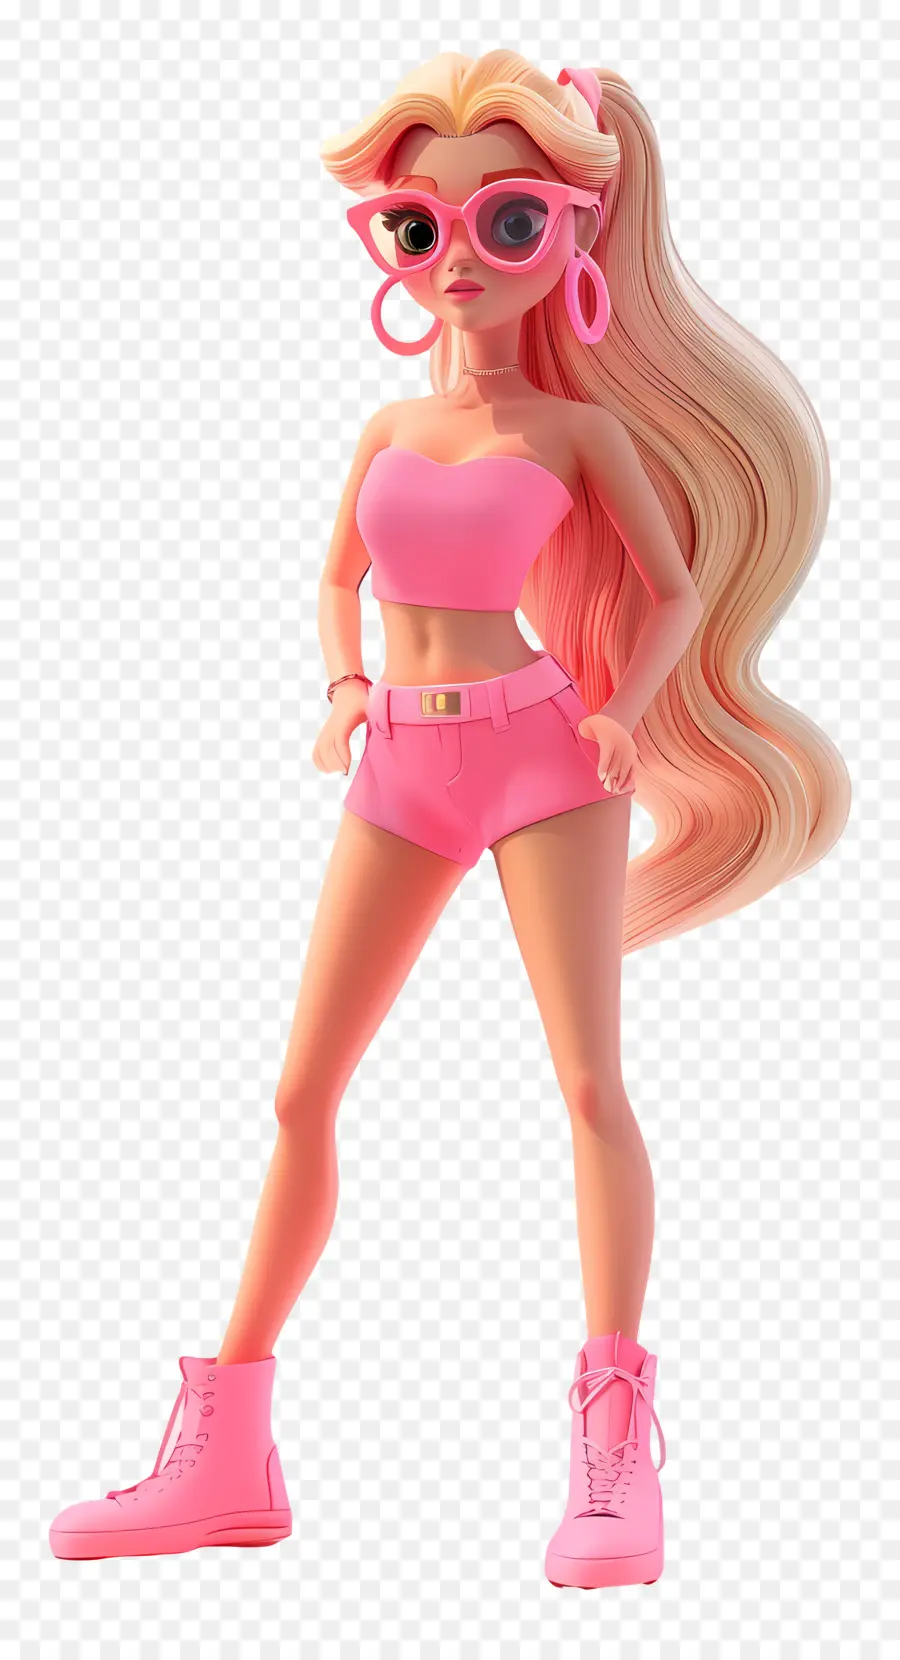 Barbie Girl 3D Kết xuất hình người nữ Tóc tóc vàng Trang phục màu hồng - Người phụ nữ tóc vàng màu hồng và kính râm.